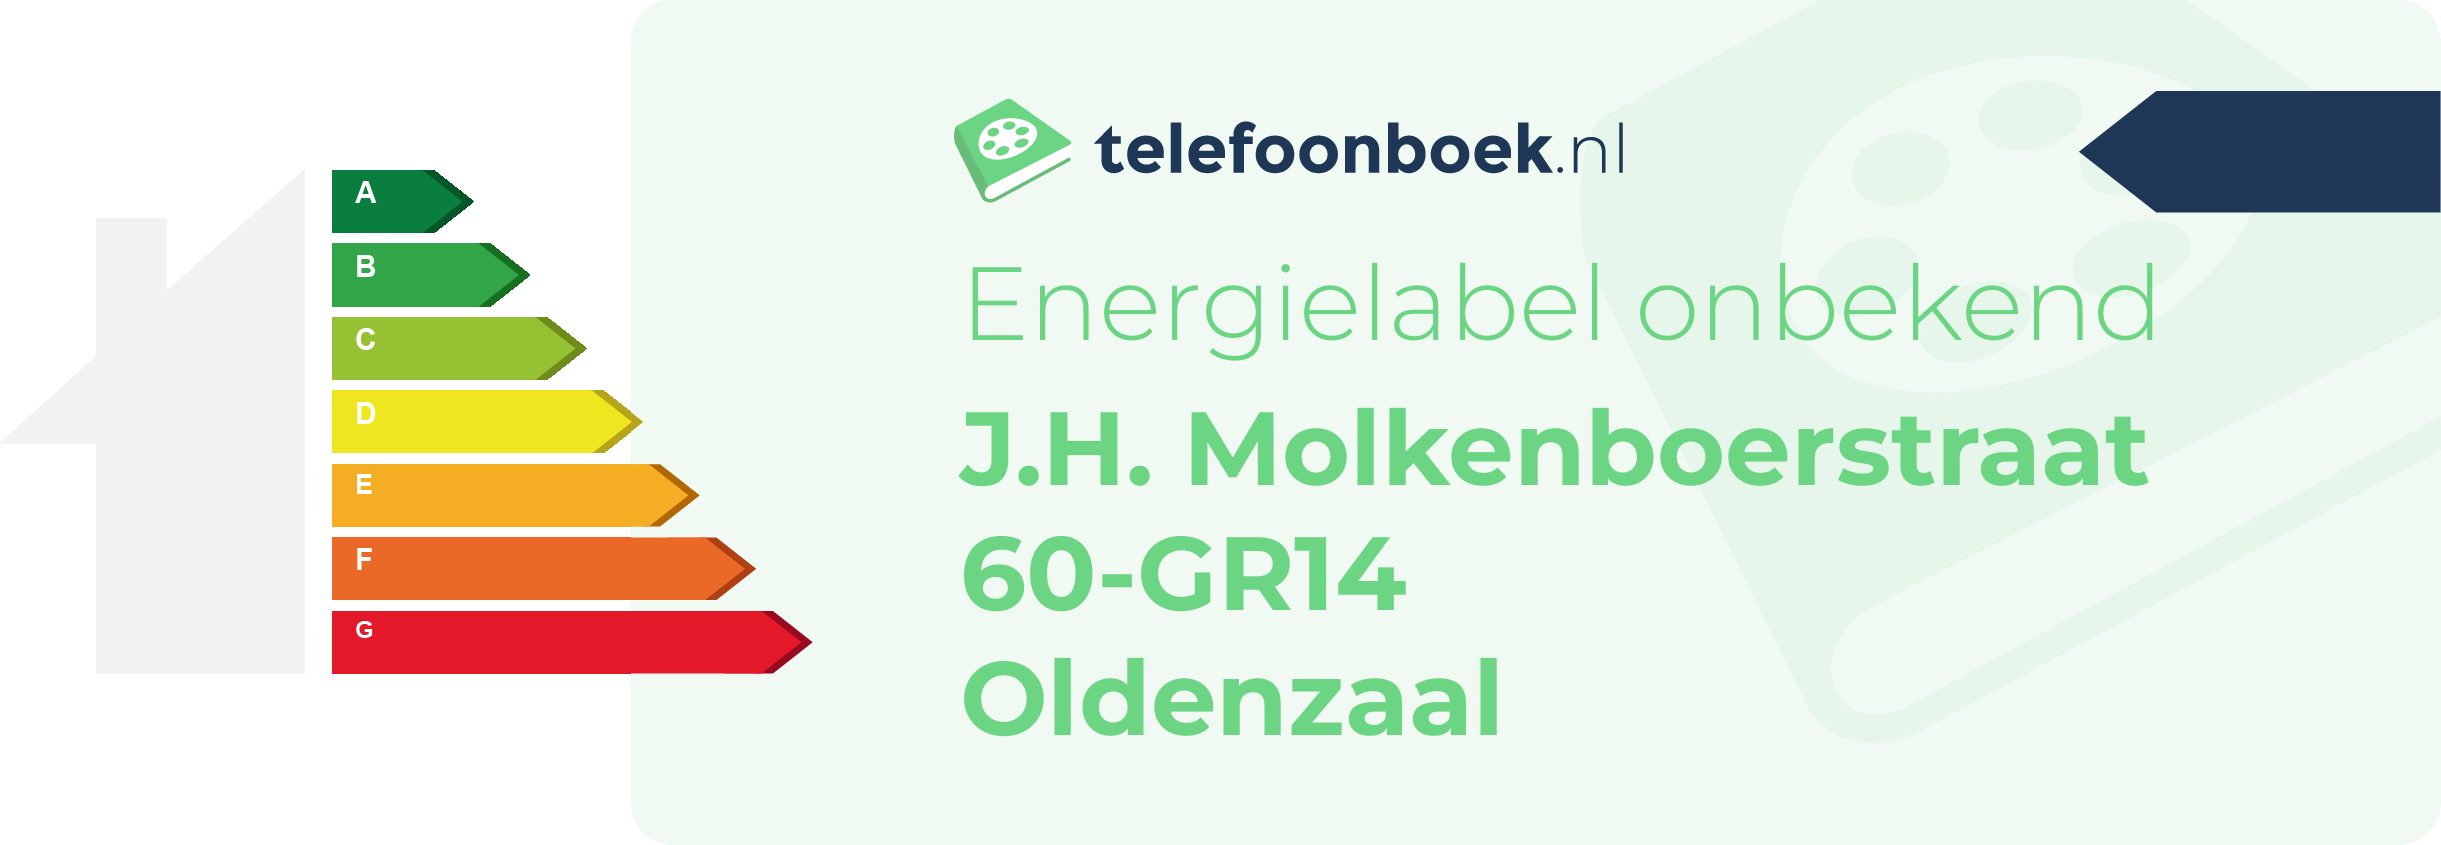 Energielabel J.H. Molkenboerstraat 60-GR14 Oldenzaal